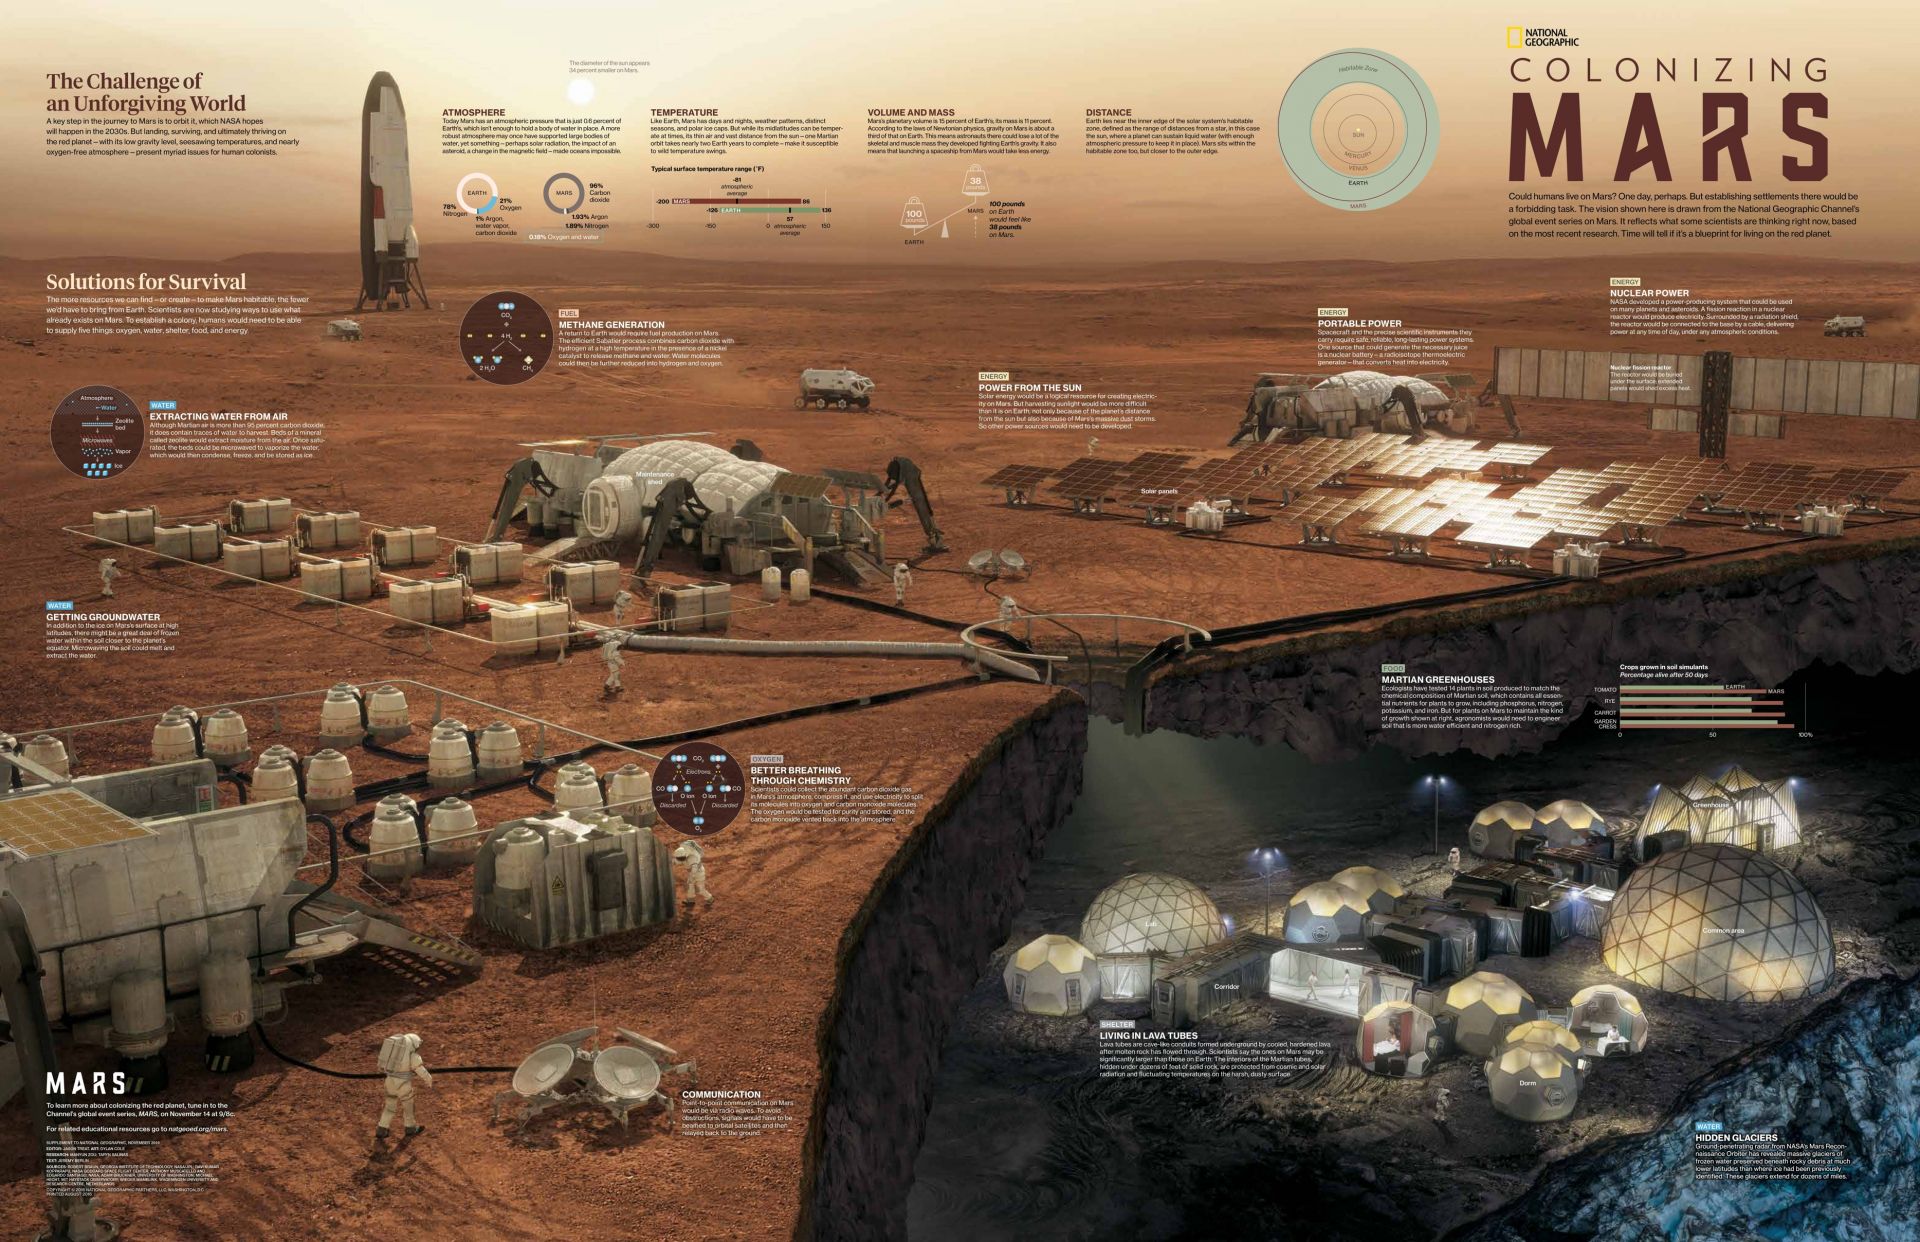 中国探测器去火星该干啥?网友脑洞大开:种菜,建房,采矿……我们都要!